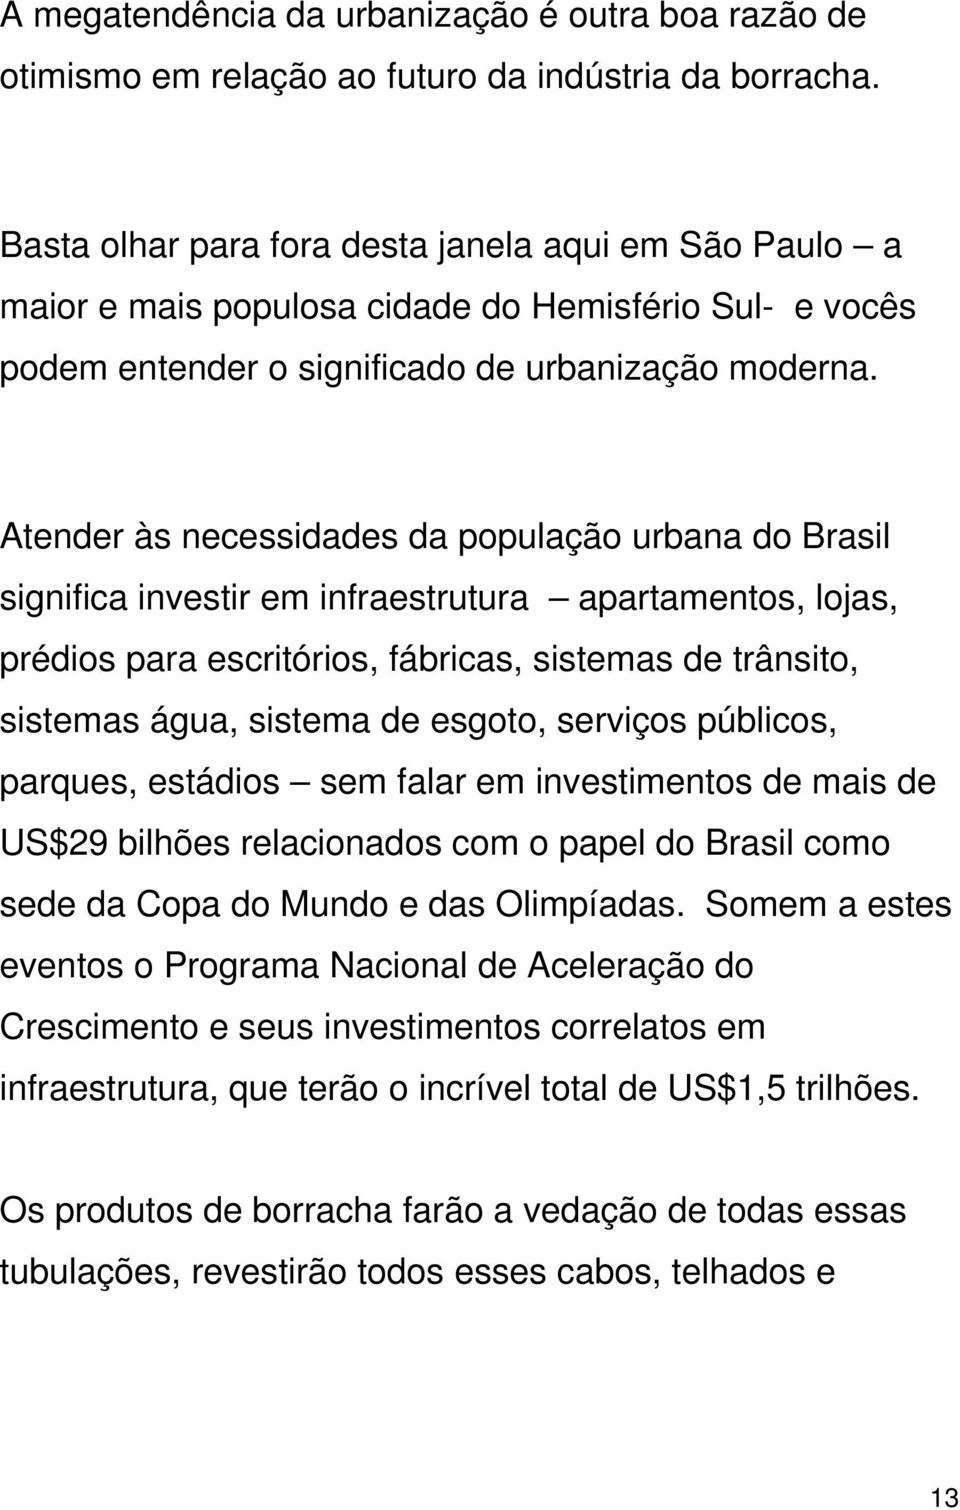 Atender às necessidades da população urbana do Brasil significa investir em infraestrutura apartamentos, lojas, prédios para escritórios, fábricas, sistemas de trânsito, sistemas água, sistema de